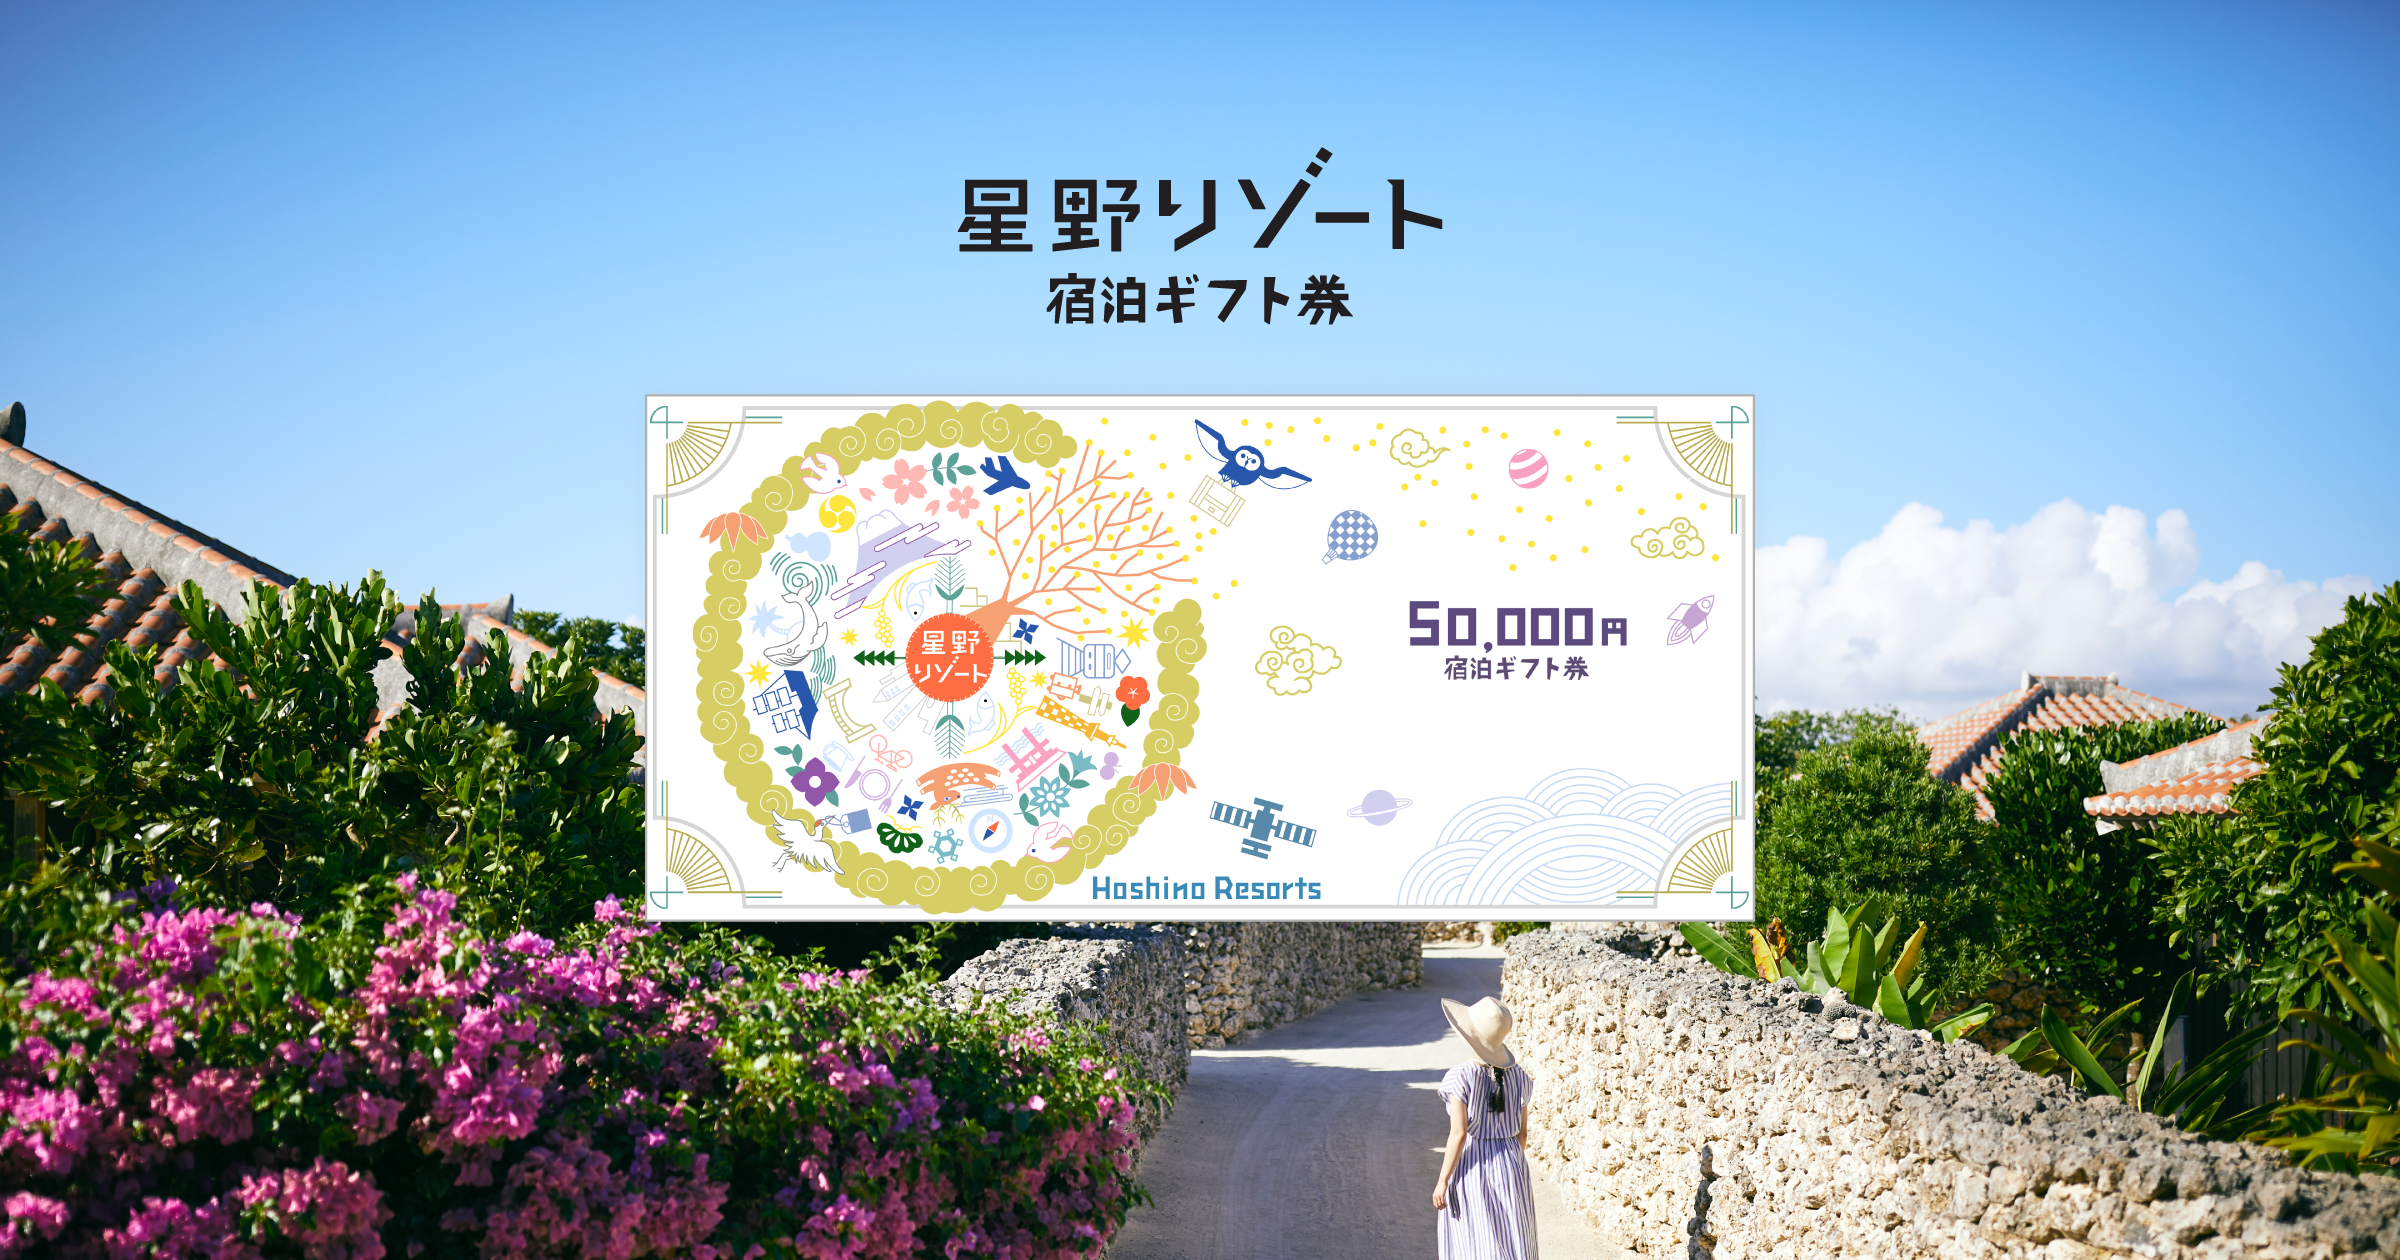 星野リゾート 宿泊ギフト券 5万円チケット